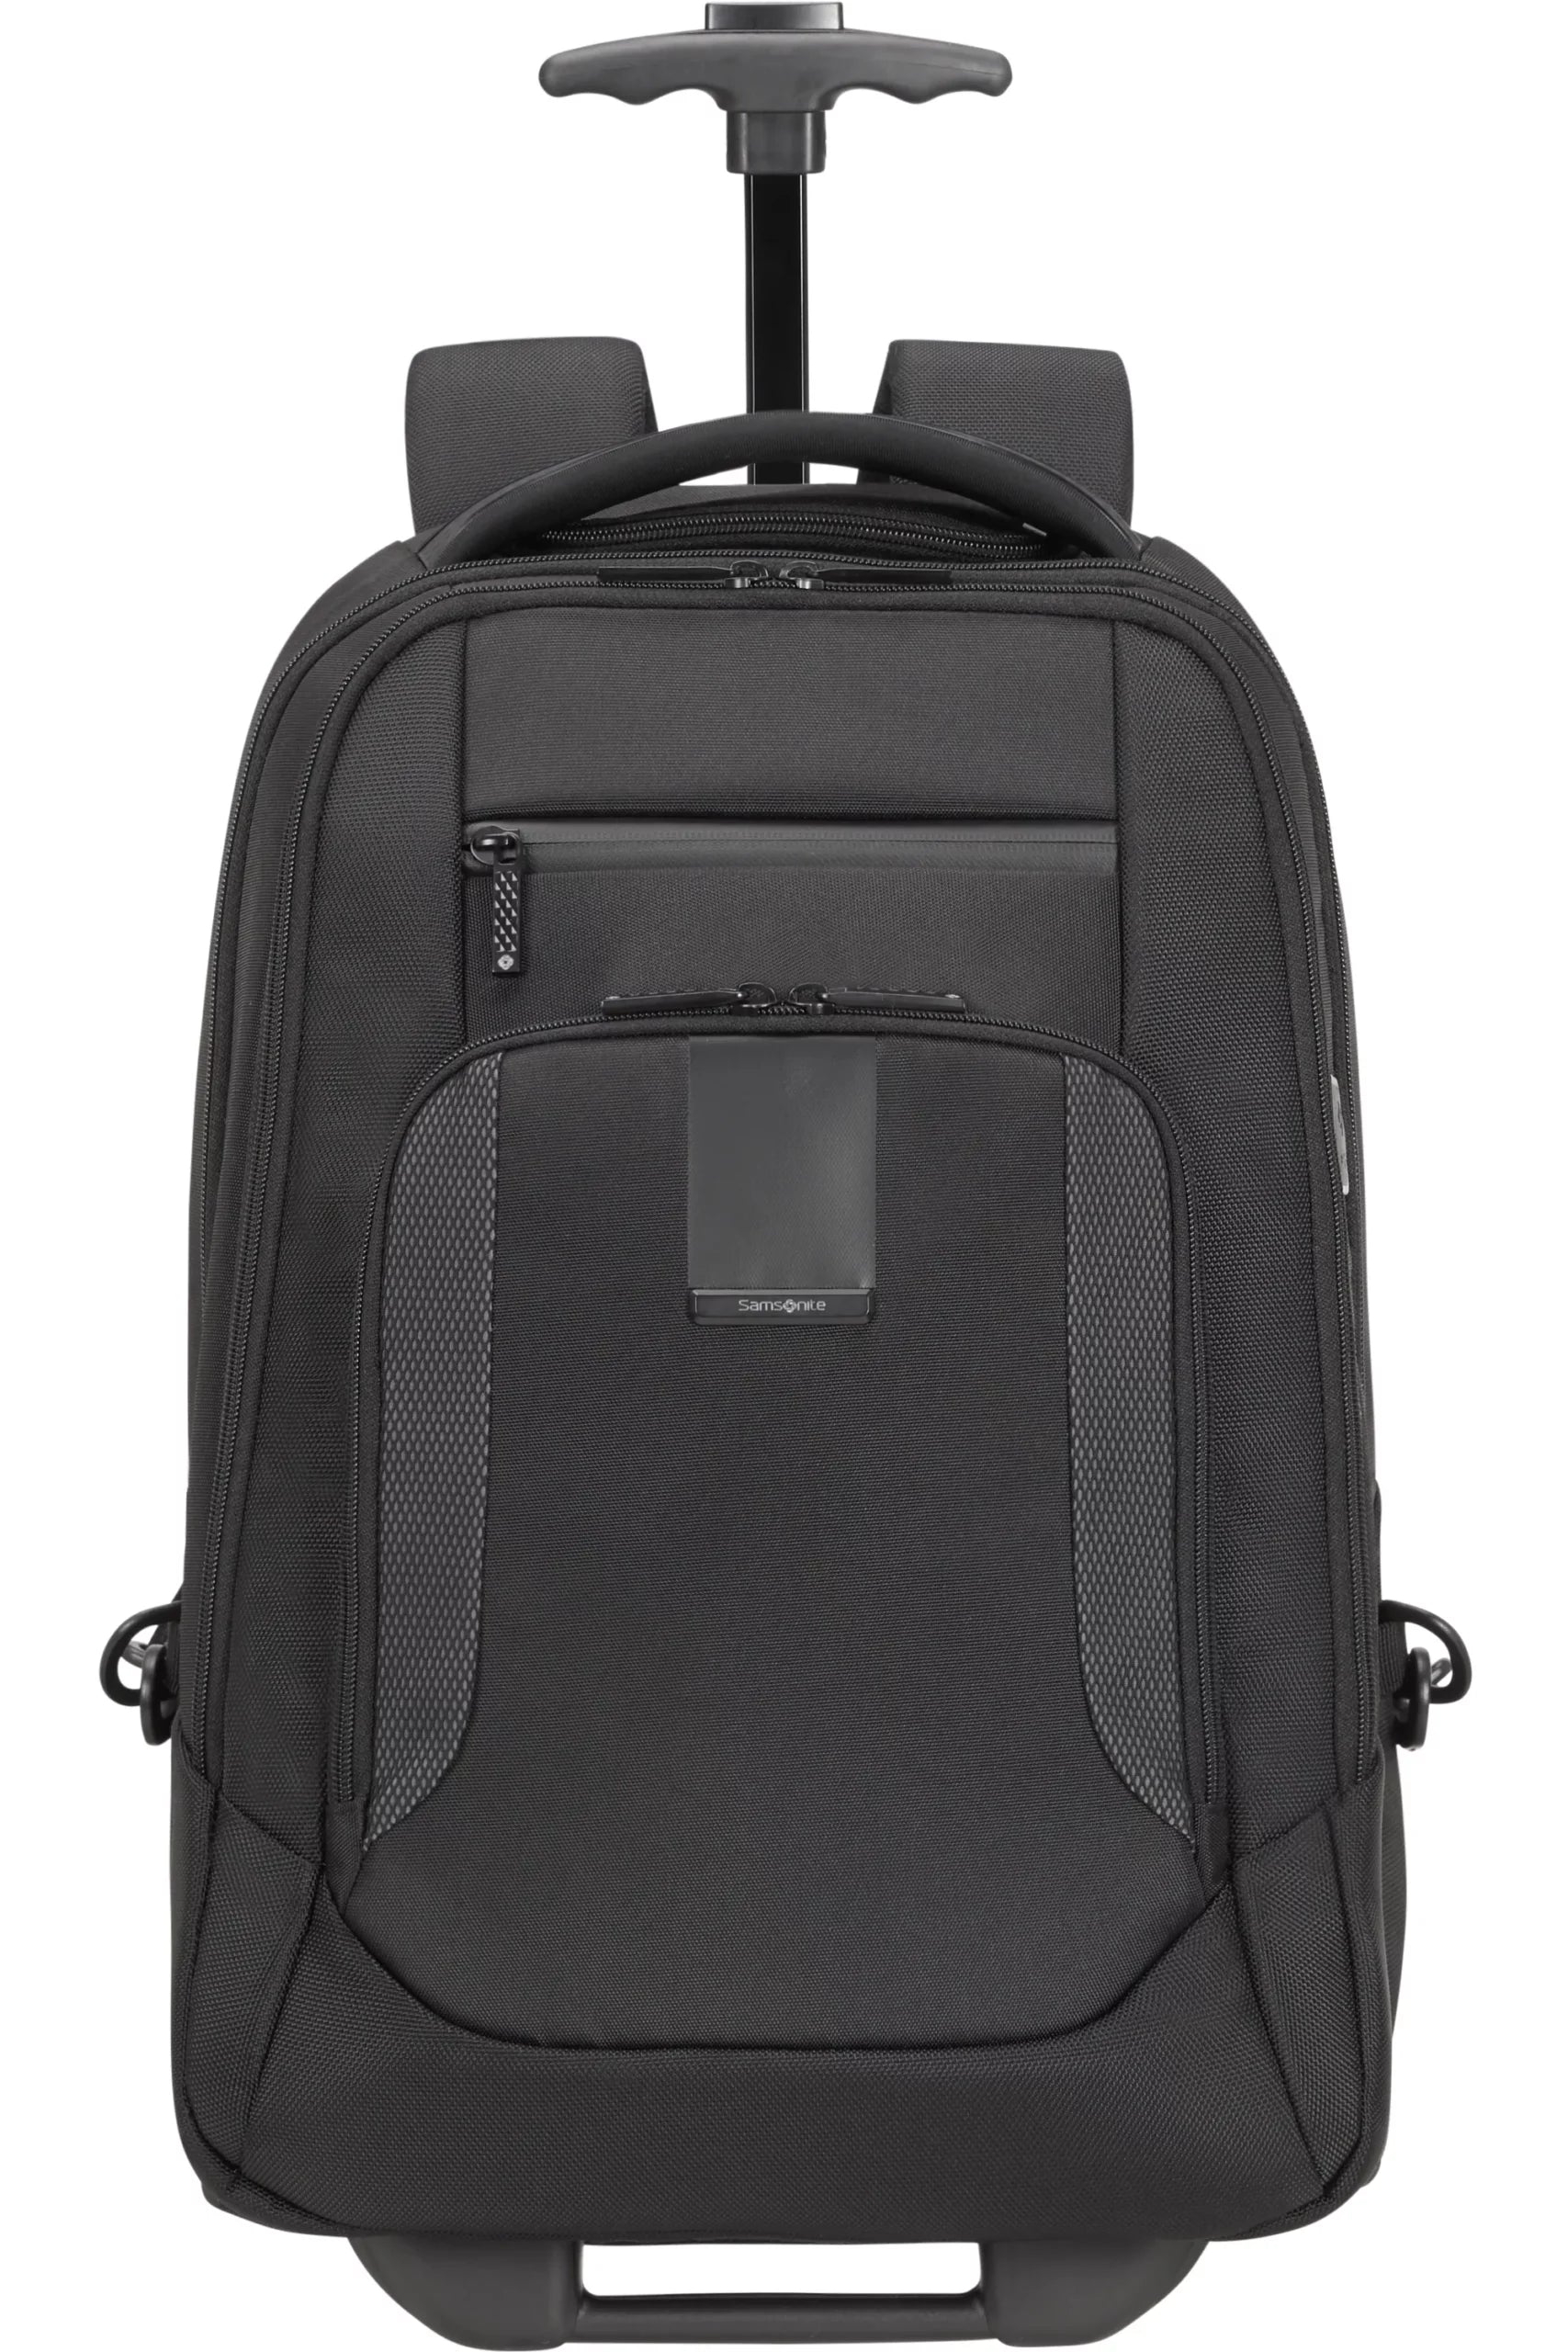 Samsonite Midtown Laptop Backpack M - Black